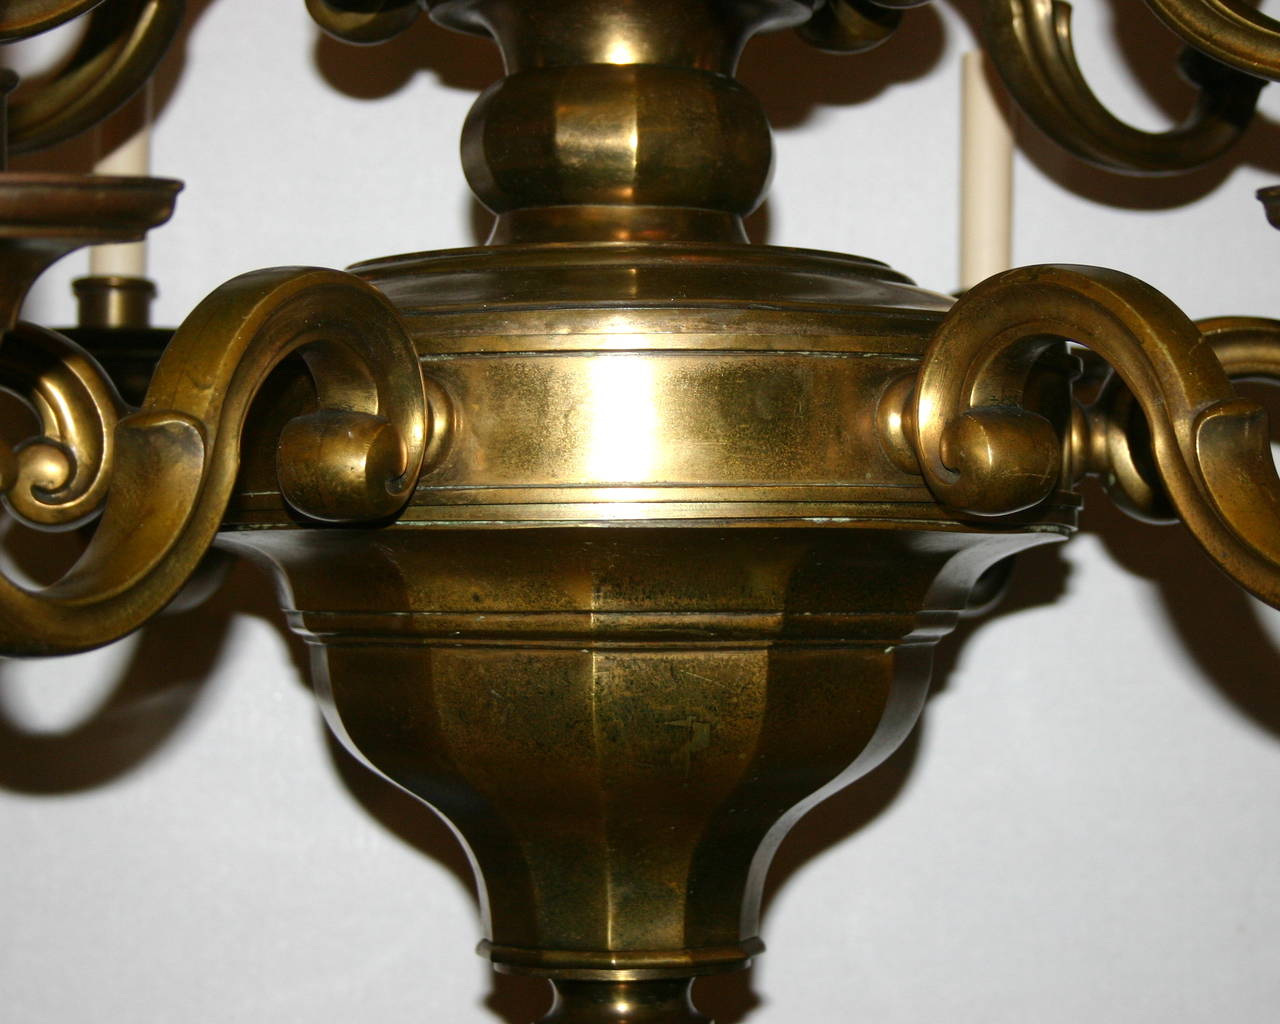 Dutch, circa 1920 double-tiered chandelier with twelve lights. Original patinated bronze finish.  
Measurements:
42 1/2" drop.
33 1/2" diameter.